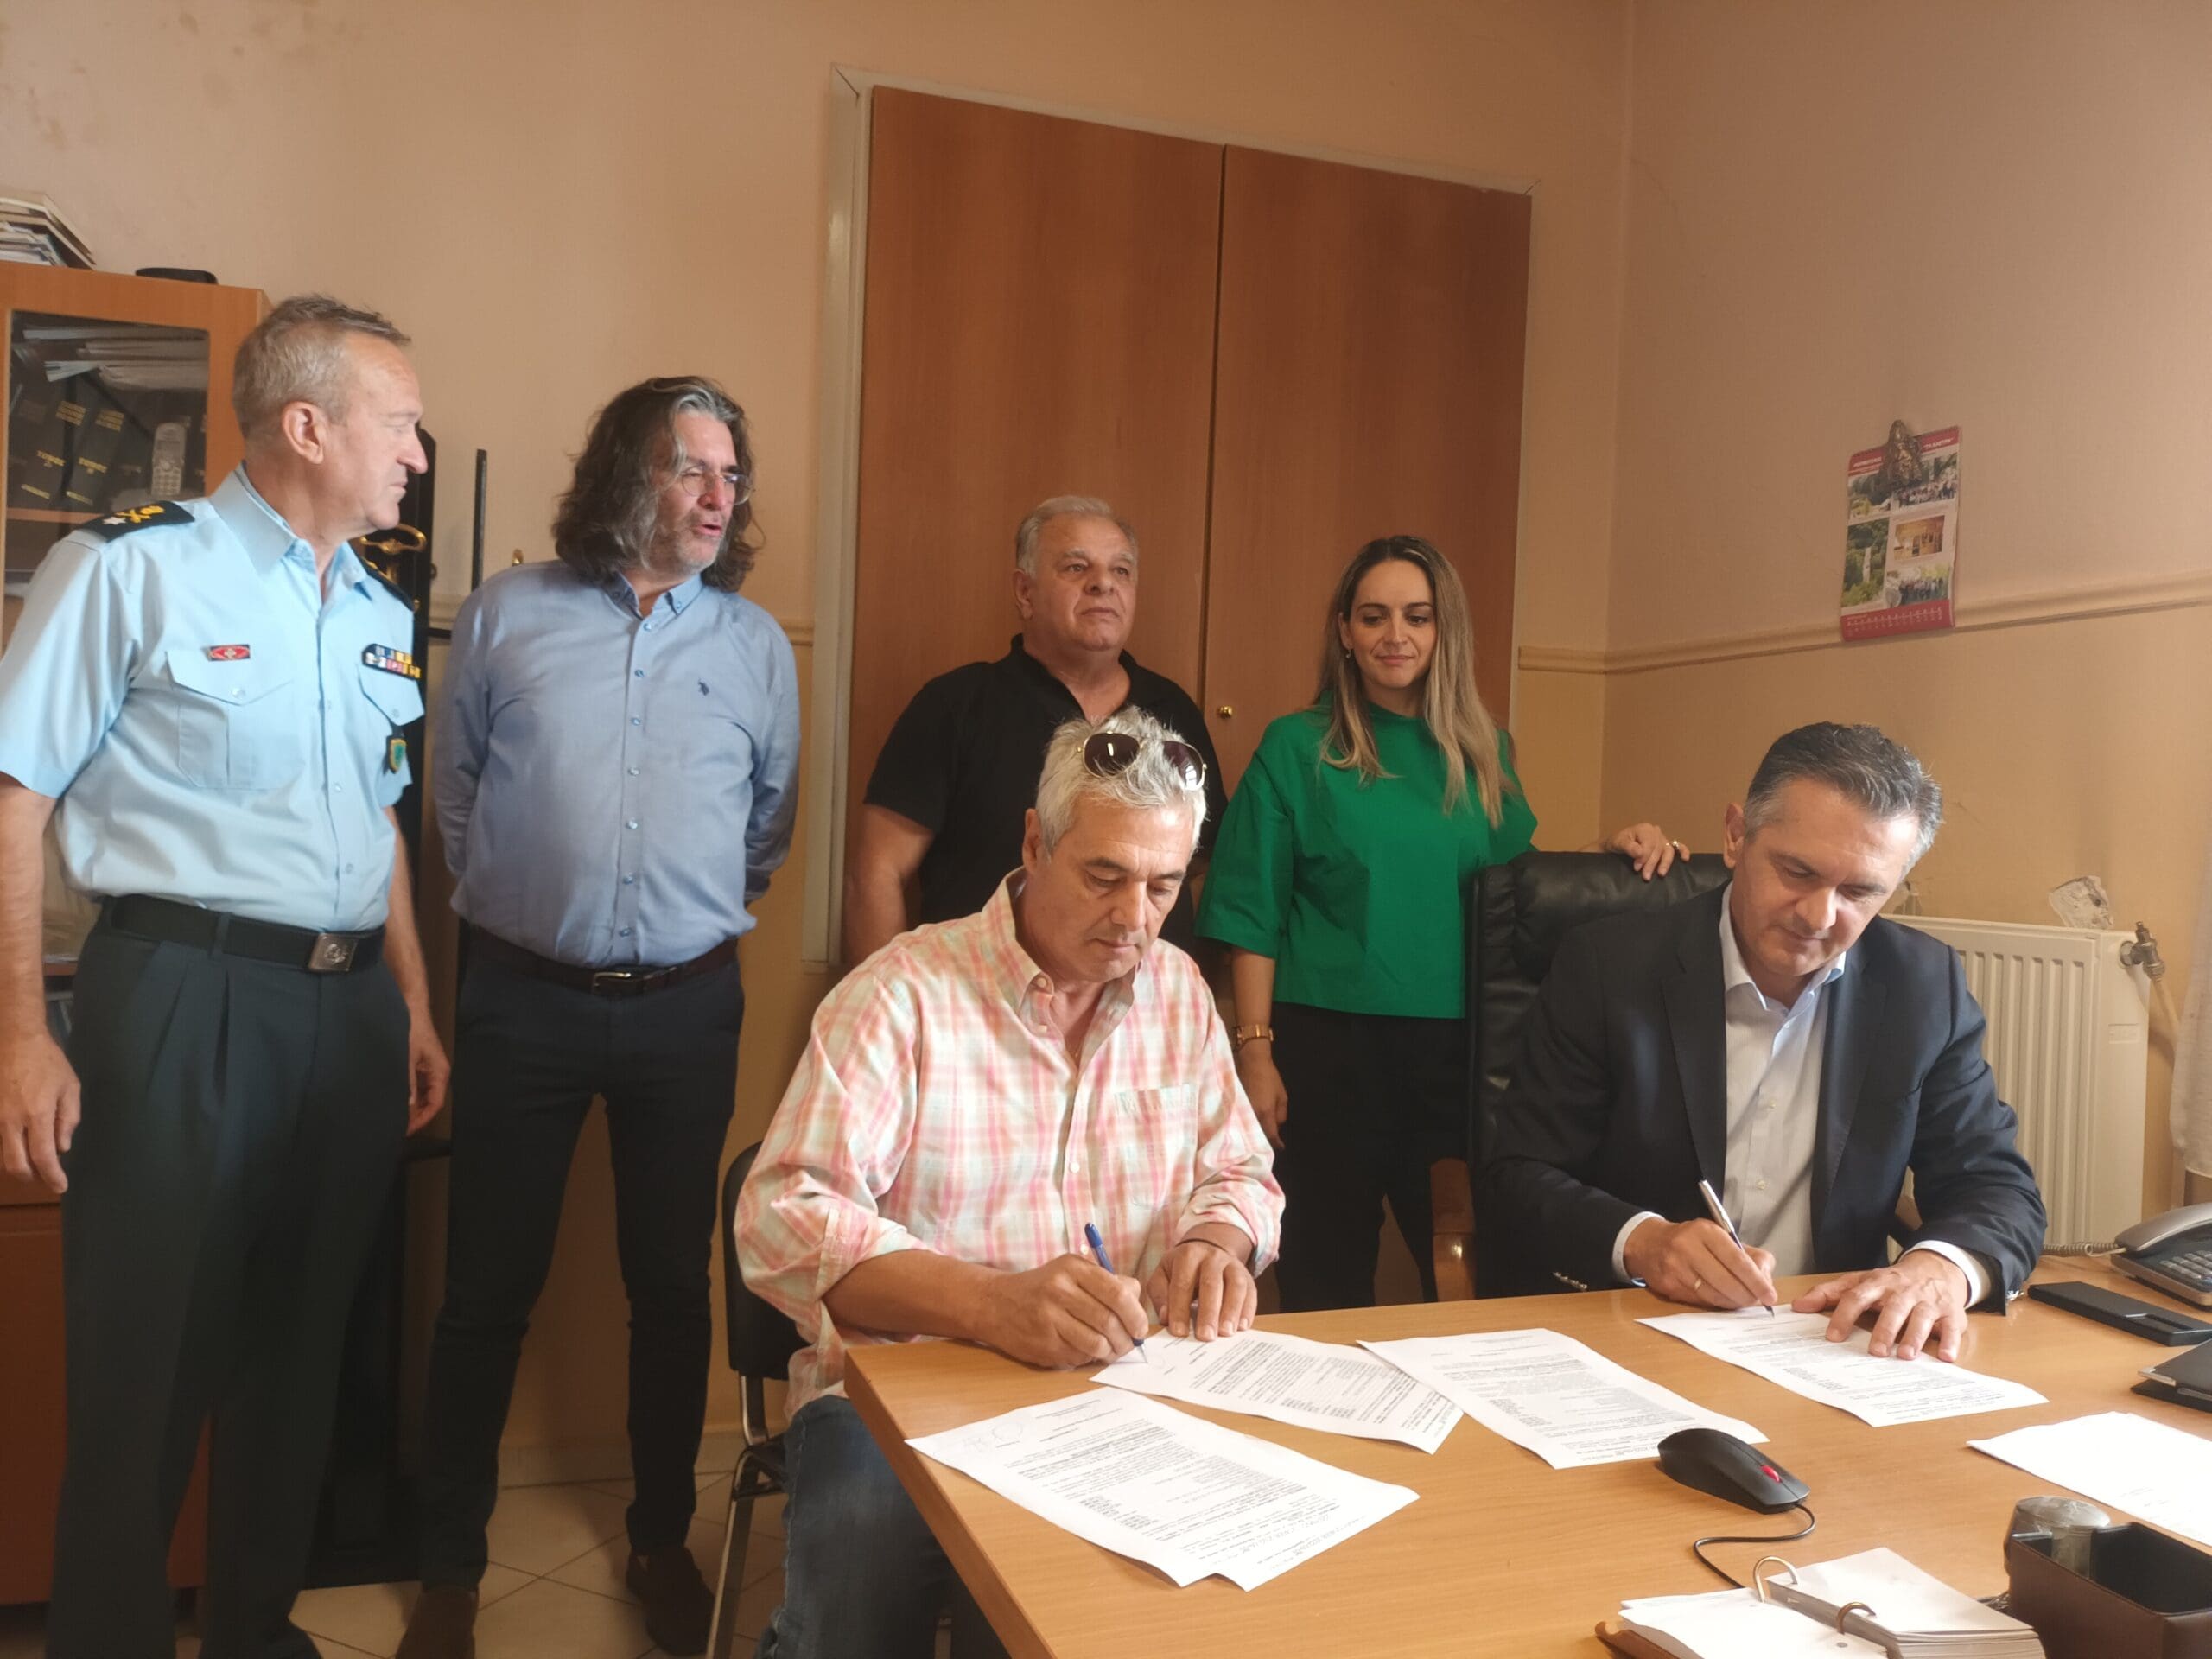 Υπογραφή σύμβασης εκτέλεσης  του έργου «Εργασίες μετατροπής του κτιρίου του πρώην Ειρηνοδικείου Σερβίων σε κτίριο του Αστυνομικού τμήματος Σερβίων».